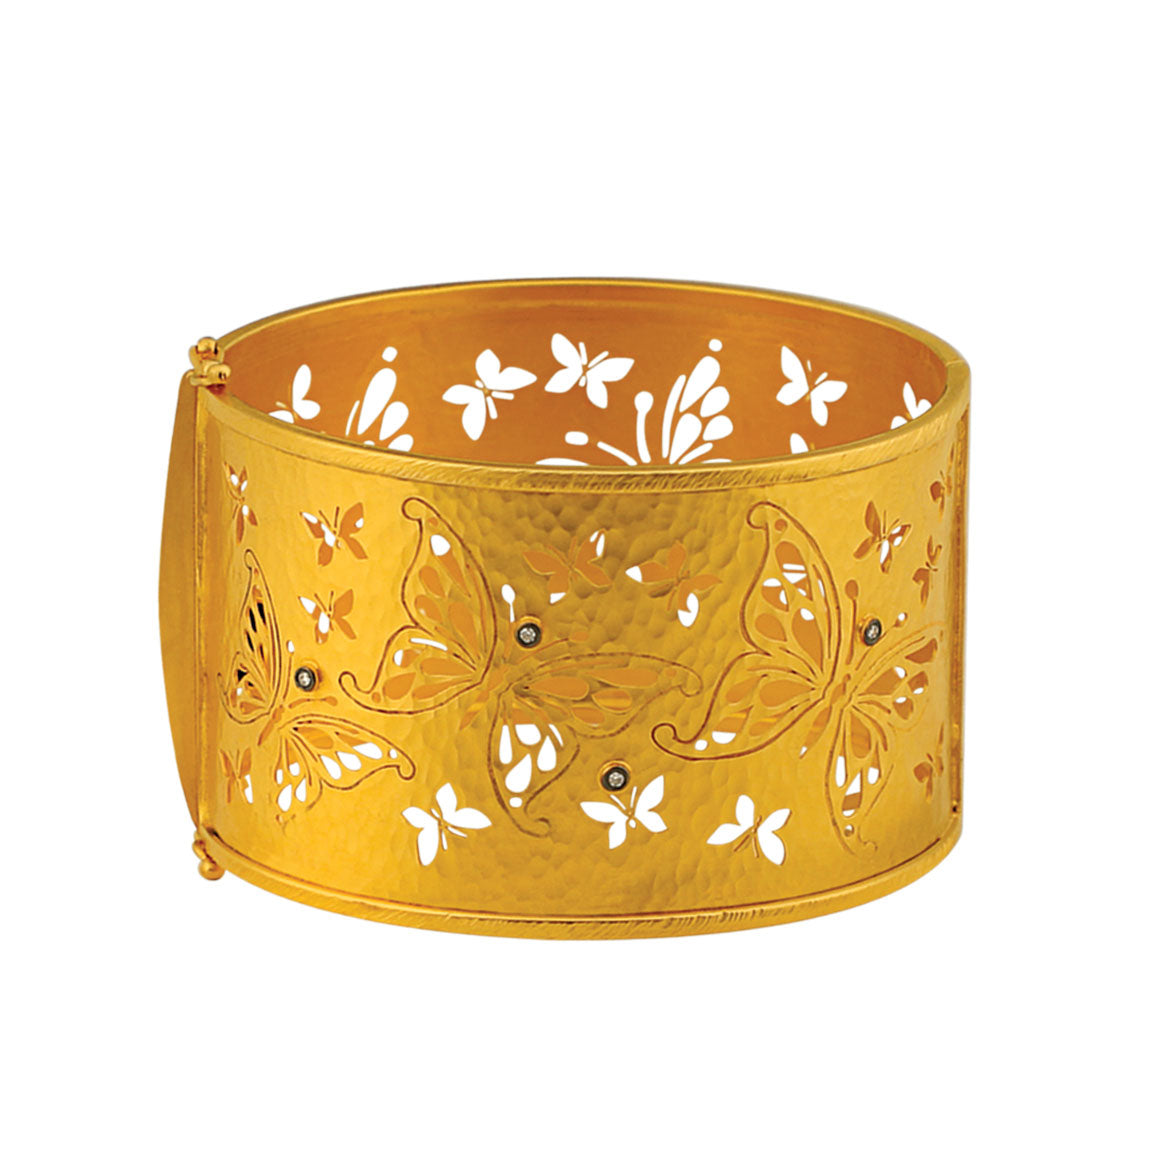 Hammered Gold Bracelet with Butterflies Motifs